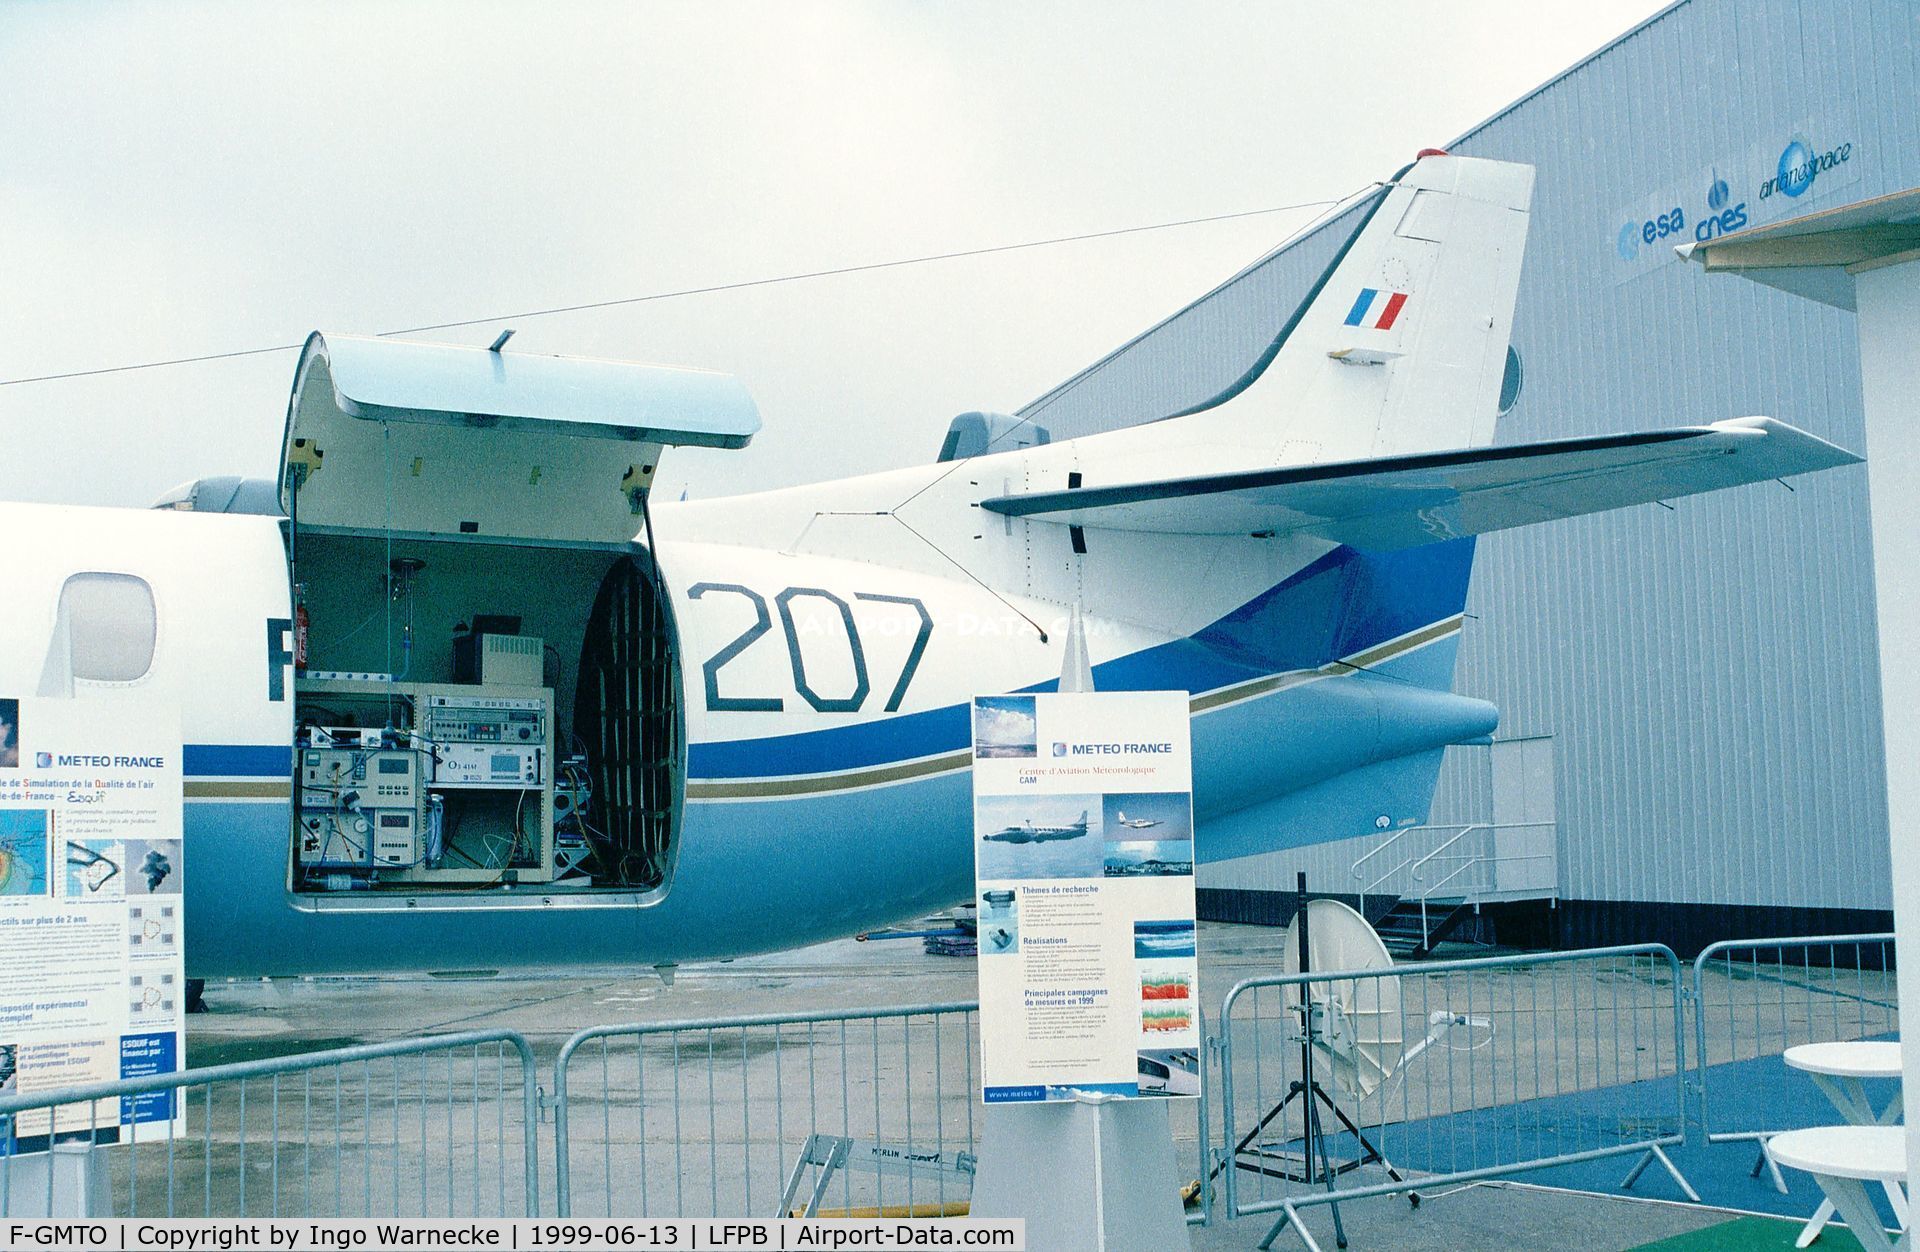 F-GMTO, 1975 Swearingen SA-226AT Merlin IVA C/N AT-031, Fairchild / Swearingen SA-225-AT meteorological aircraft at the Aerosalon 1989 Paris